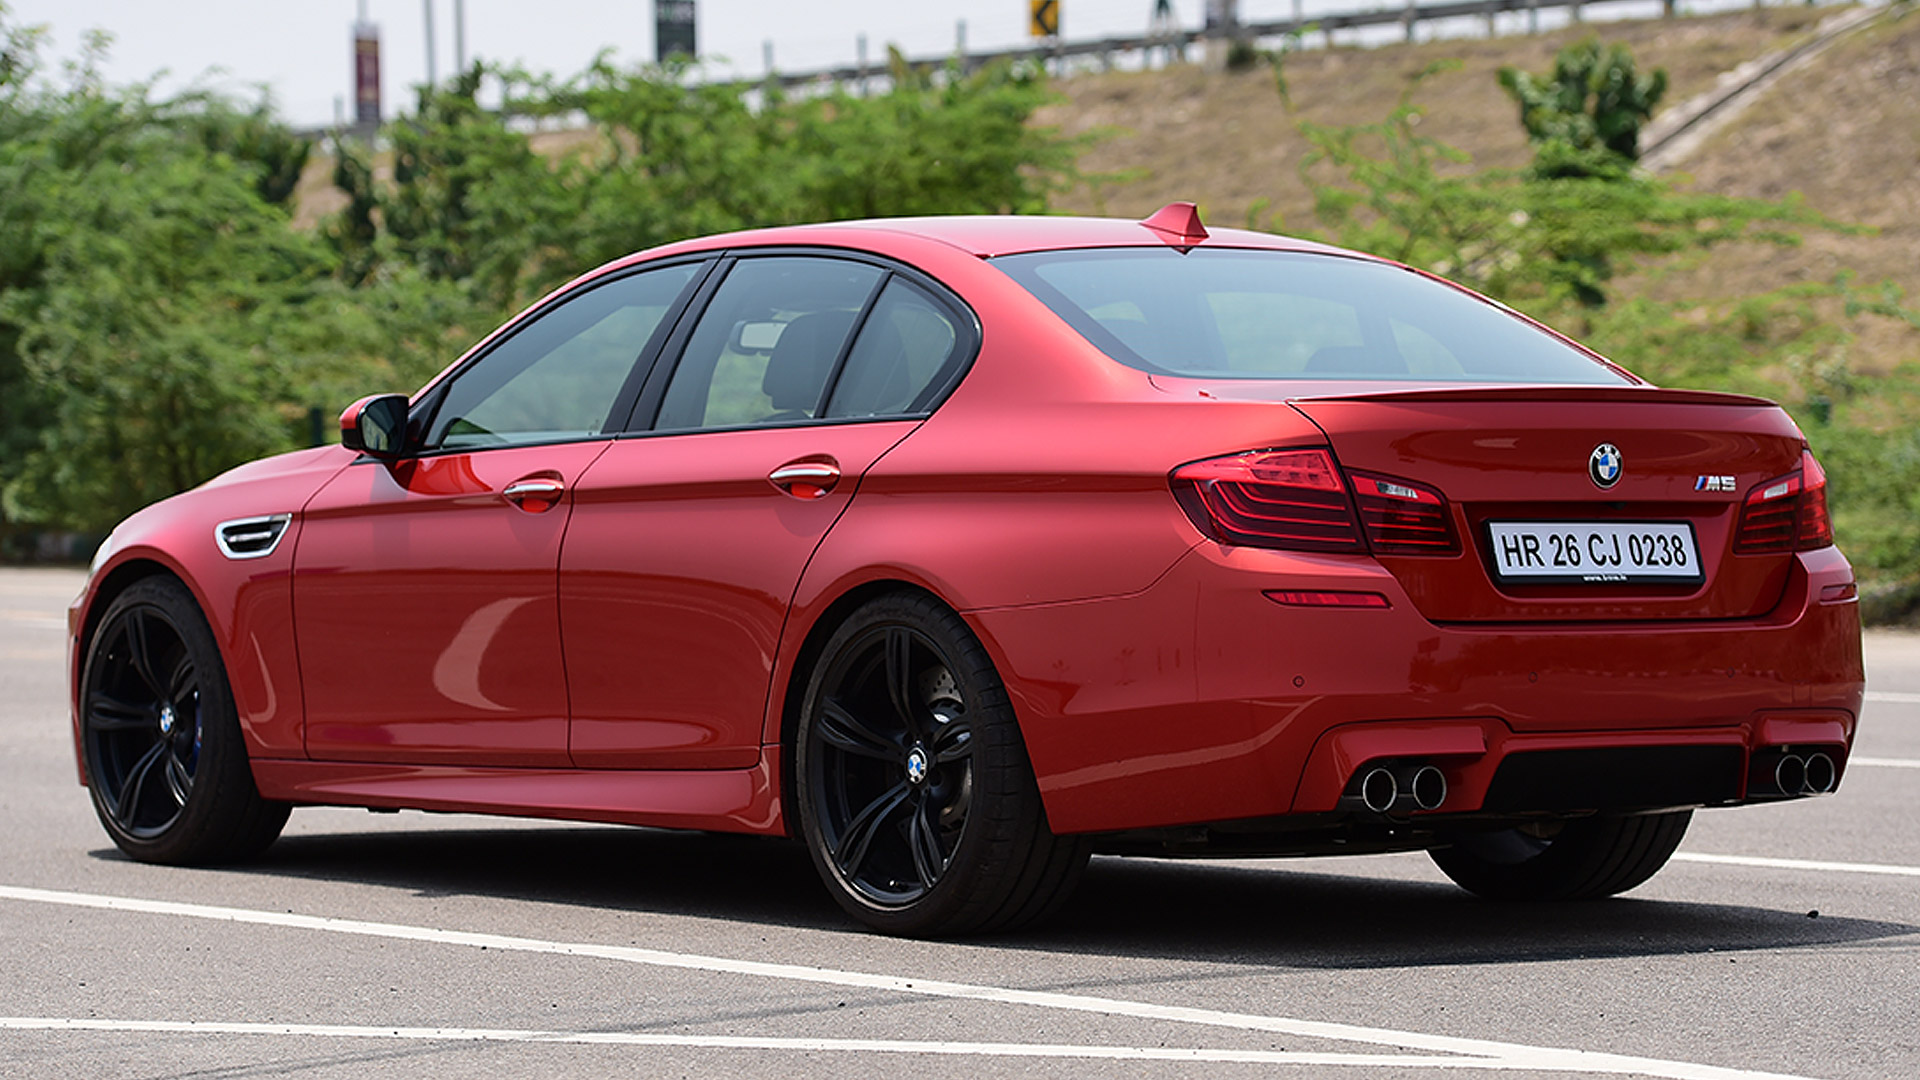 BMW M5 2014 STD Compare